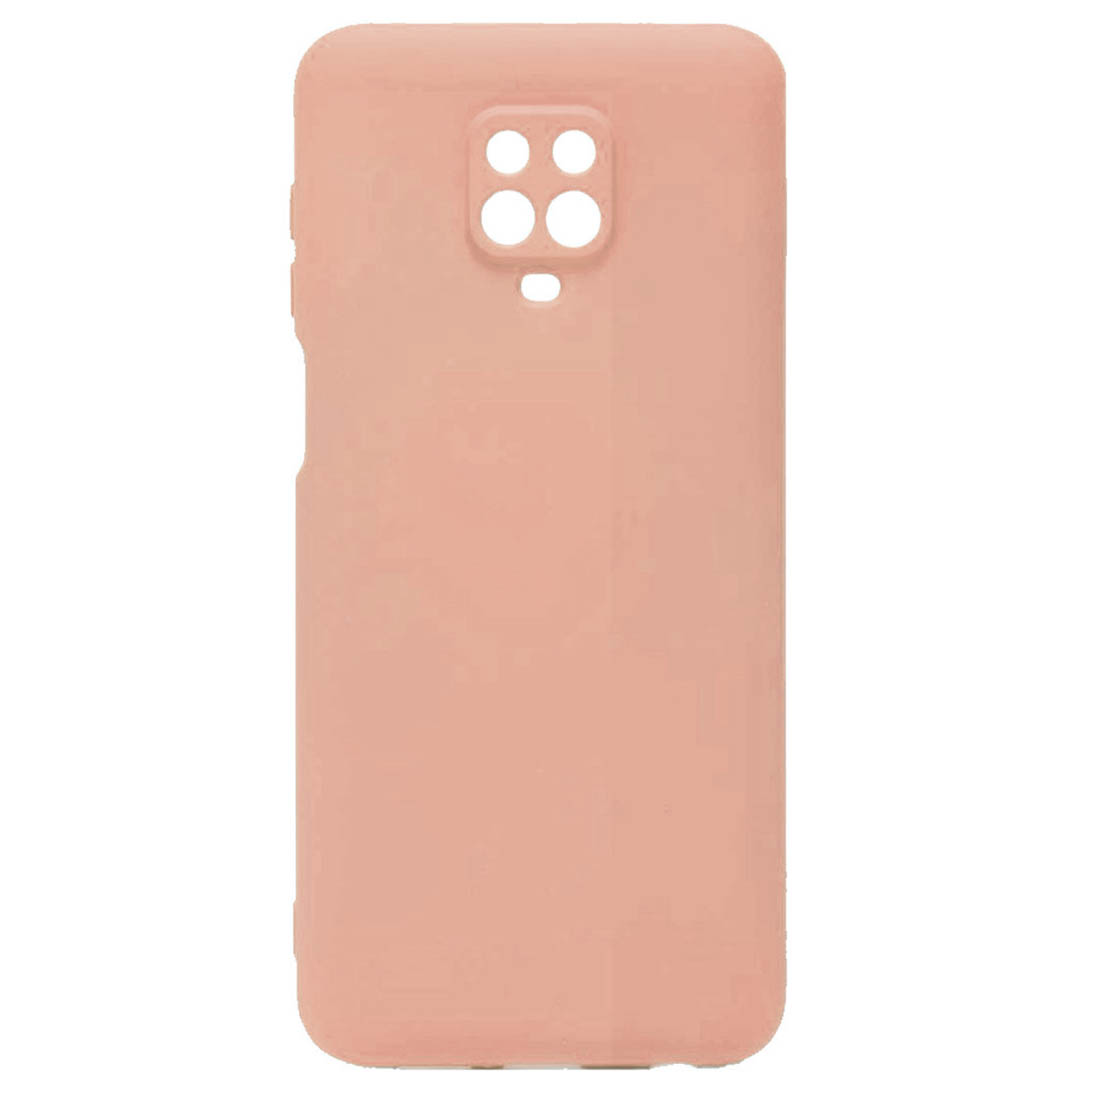 Чехол накладка для XIAOMI Redmi Note 9 Pro, Redmi Note 9S, защита камеры, силикон, бархат, цвет розовый песок